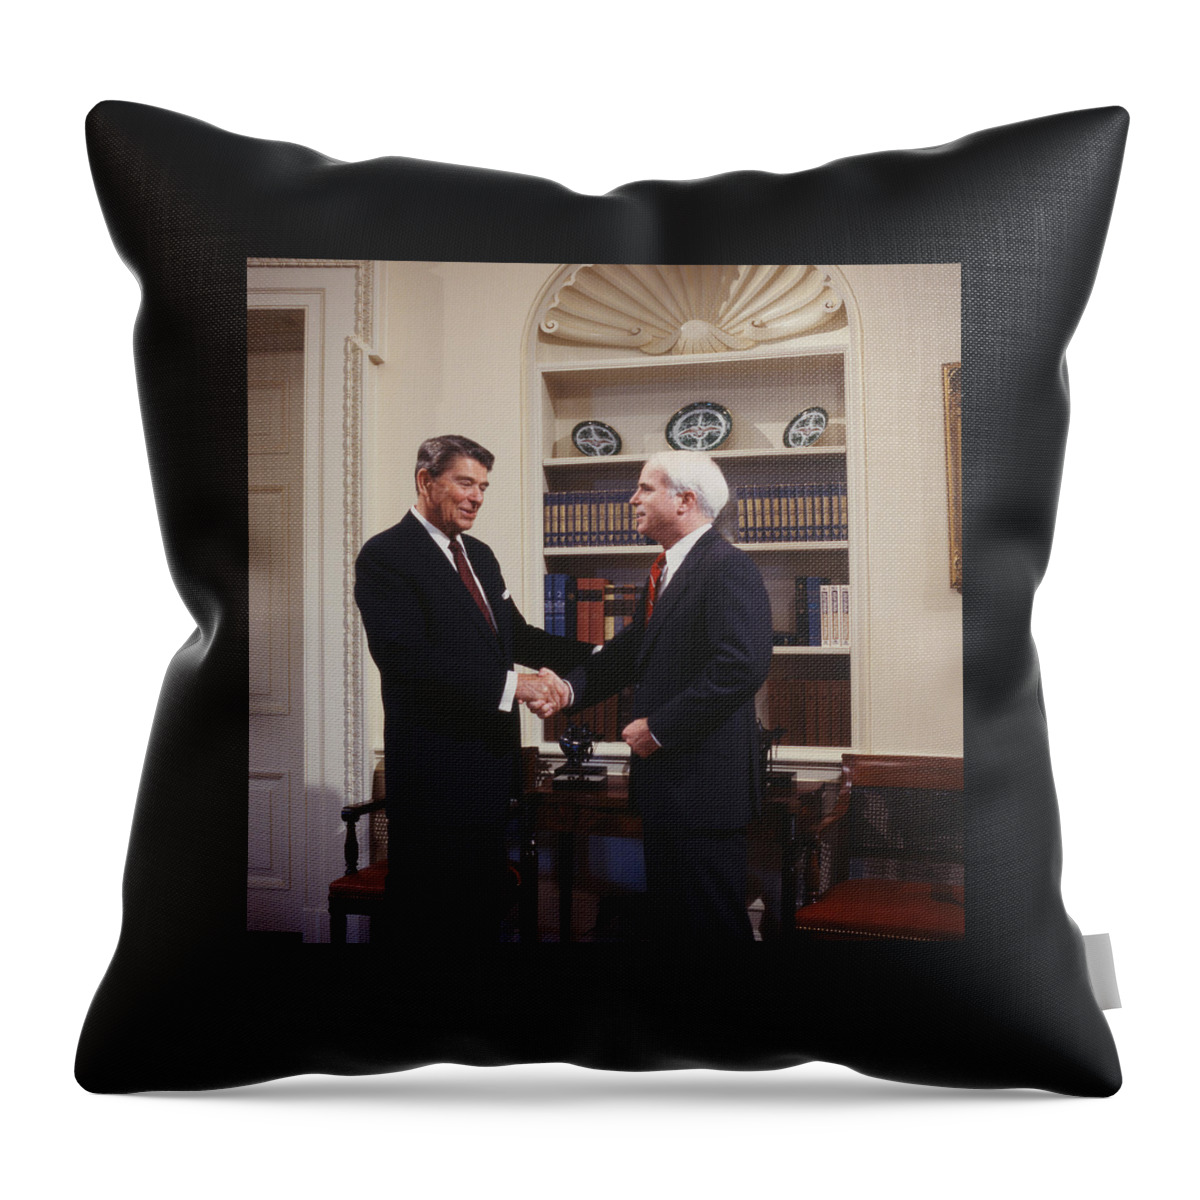 Ronald Reagan And John Mccain Throw Pillow featuring the digital art Ronald Reagan and John McCain by Carol Highsmith